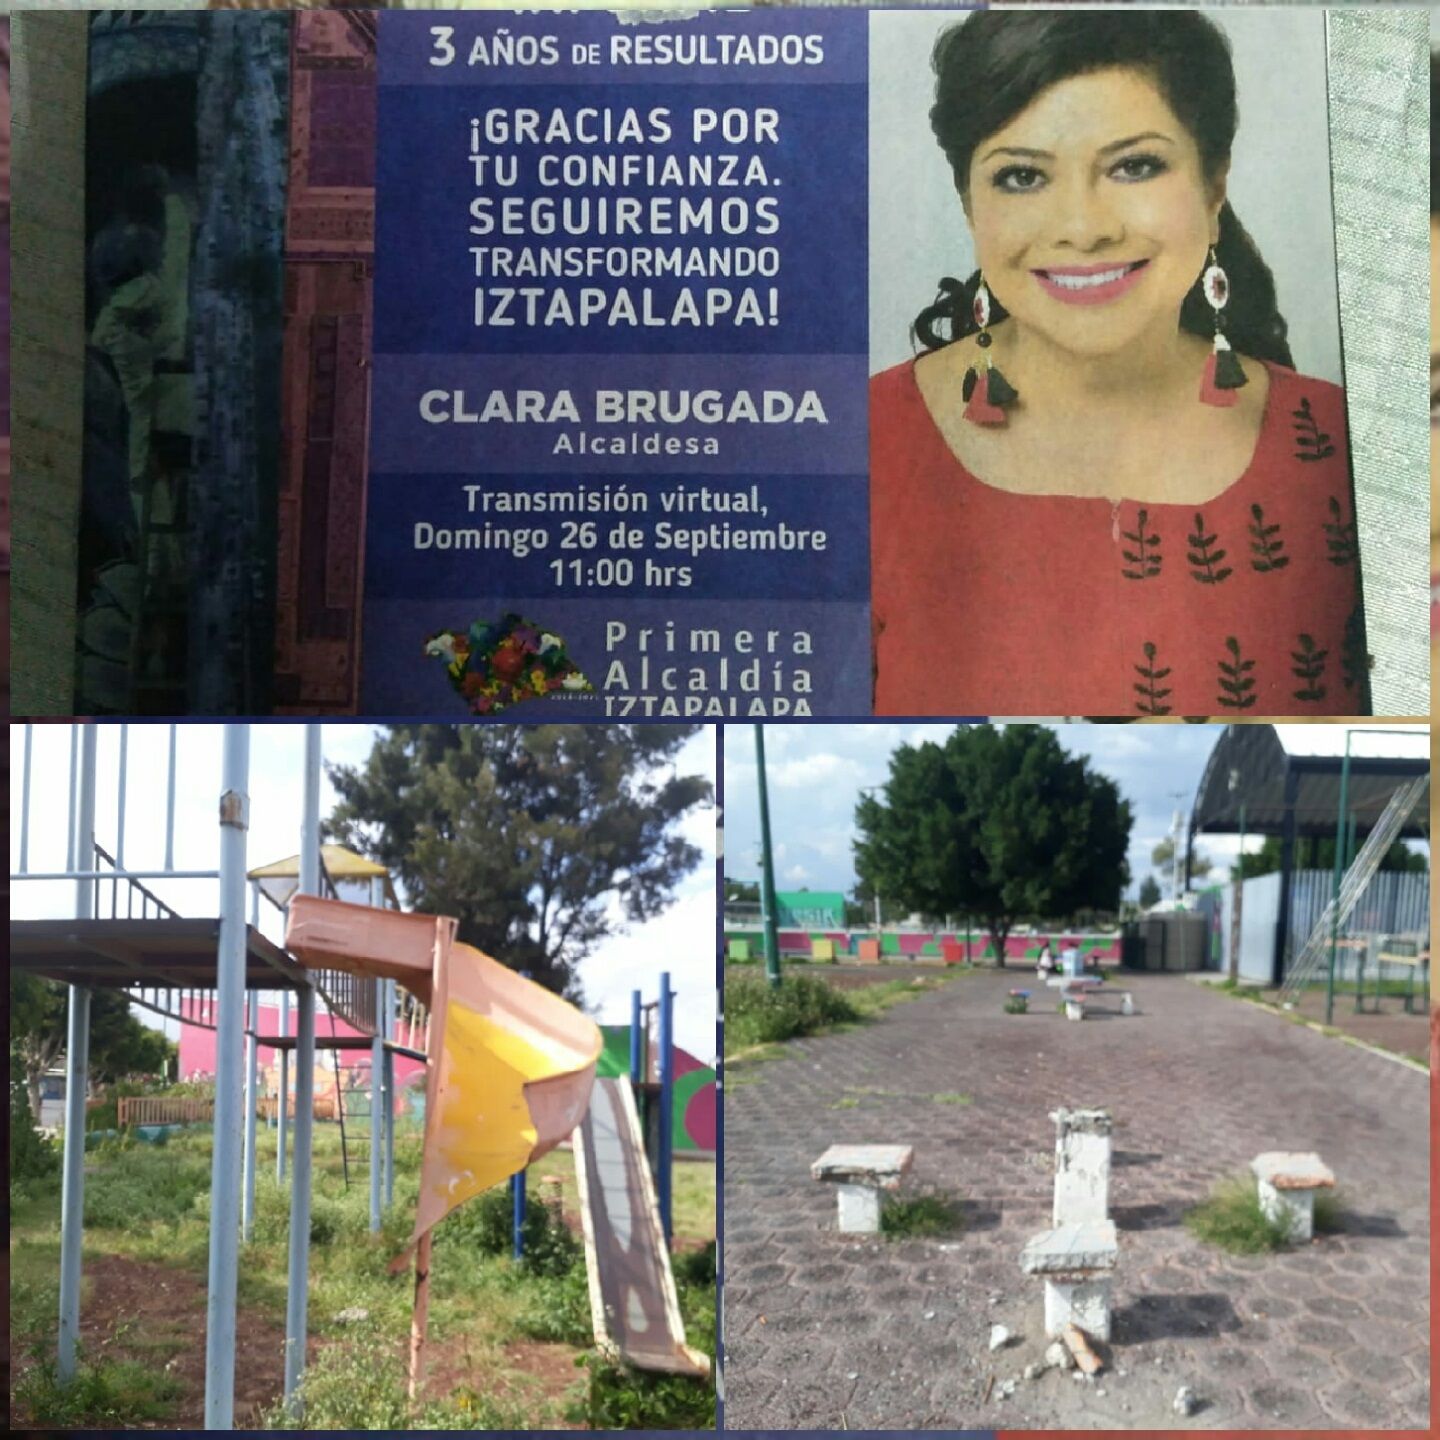 #Así gobierna MORENA Clara Brugada en la Unidad Ermita Zaragoza, Iztapalapa